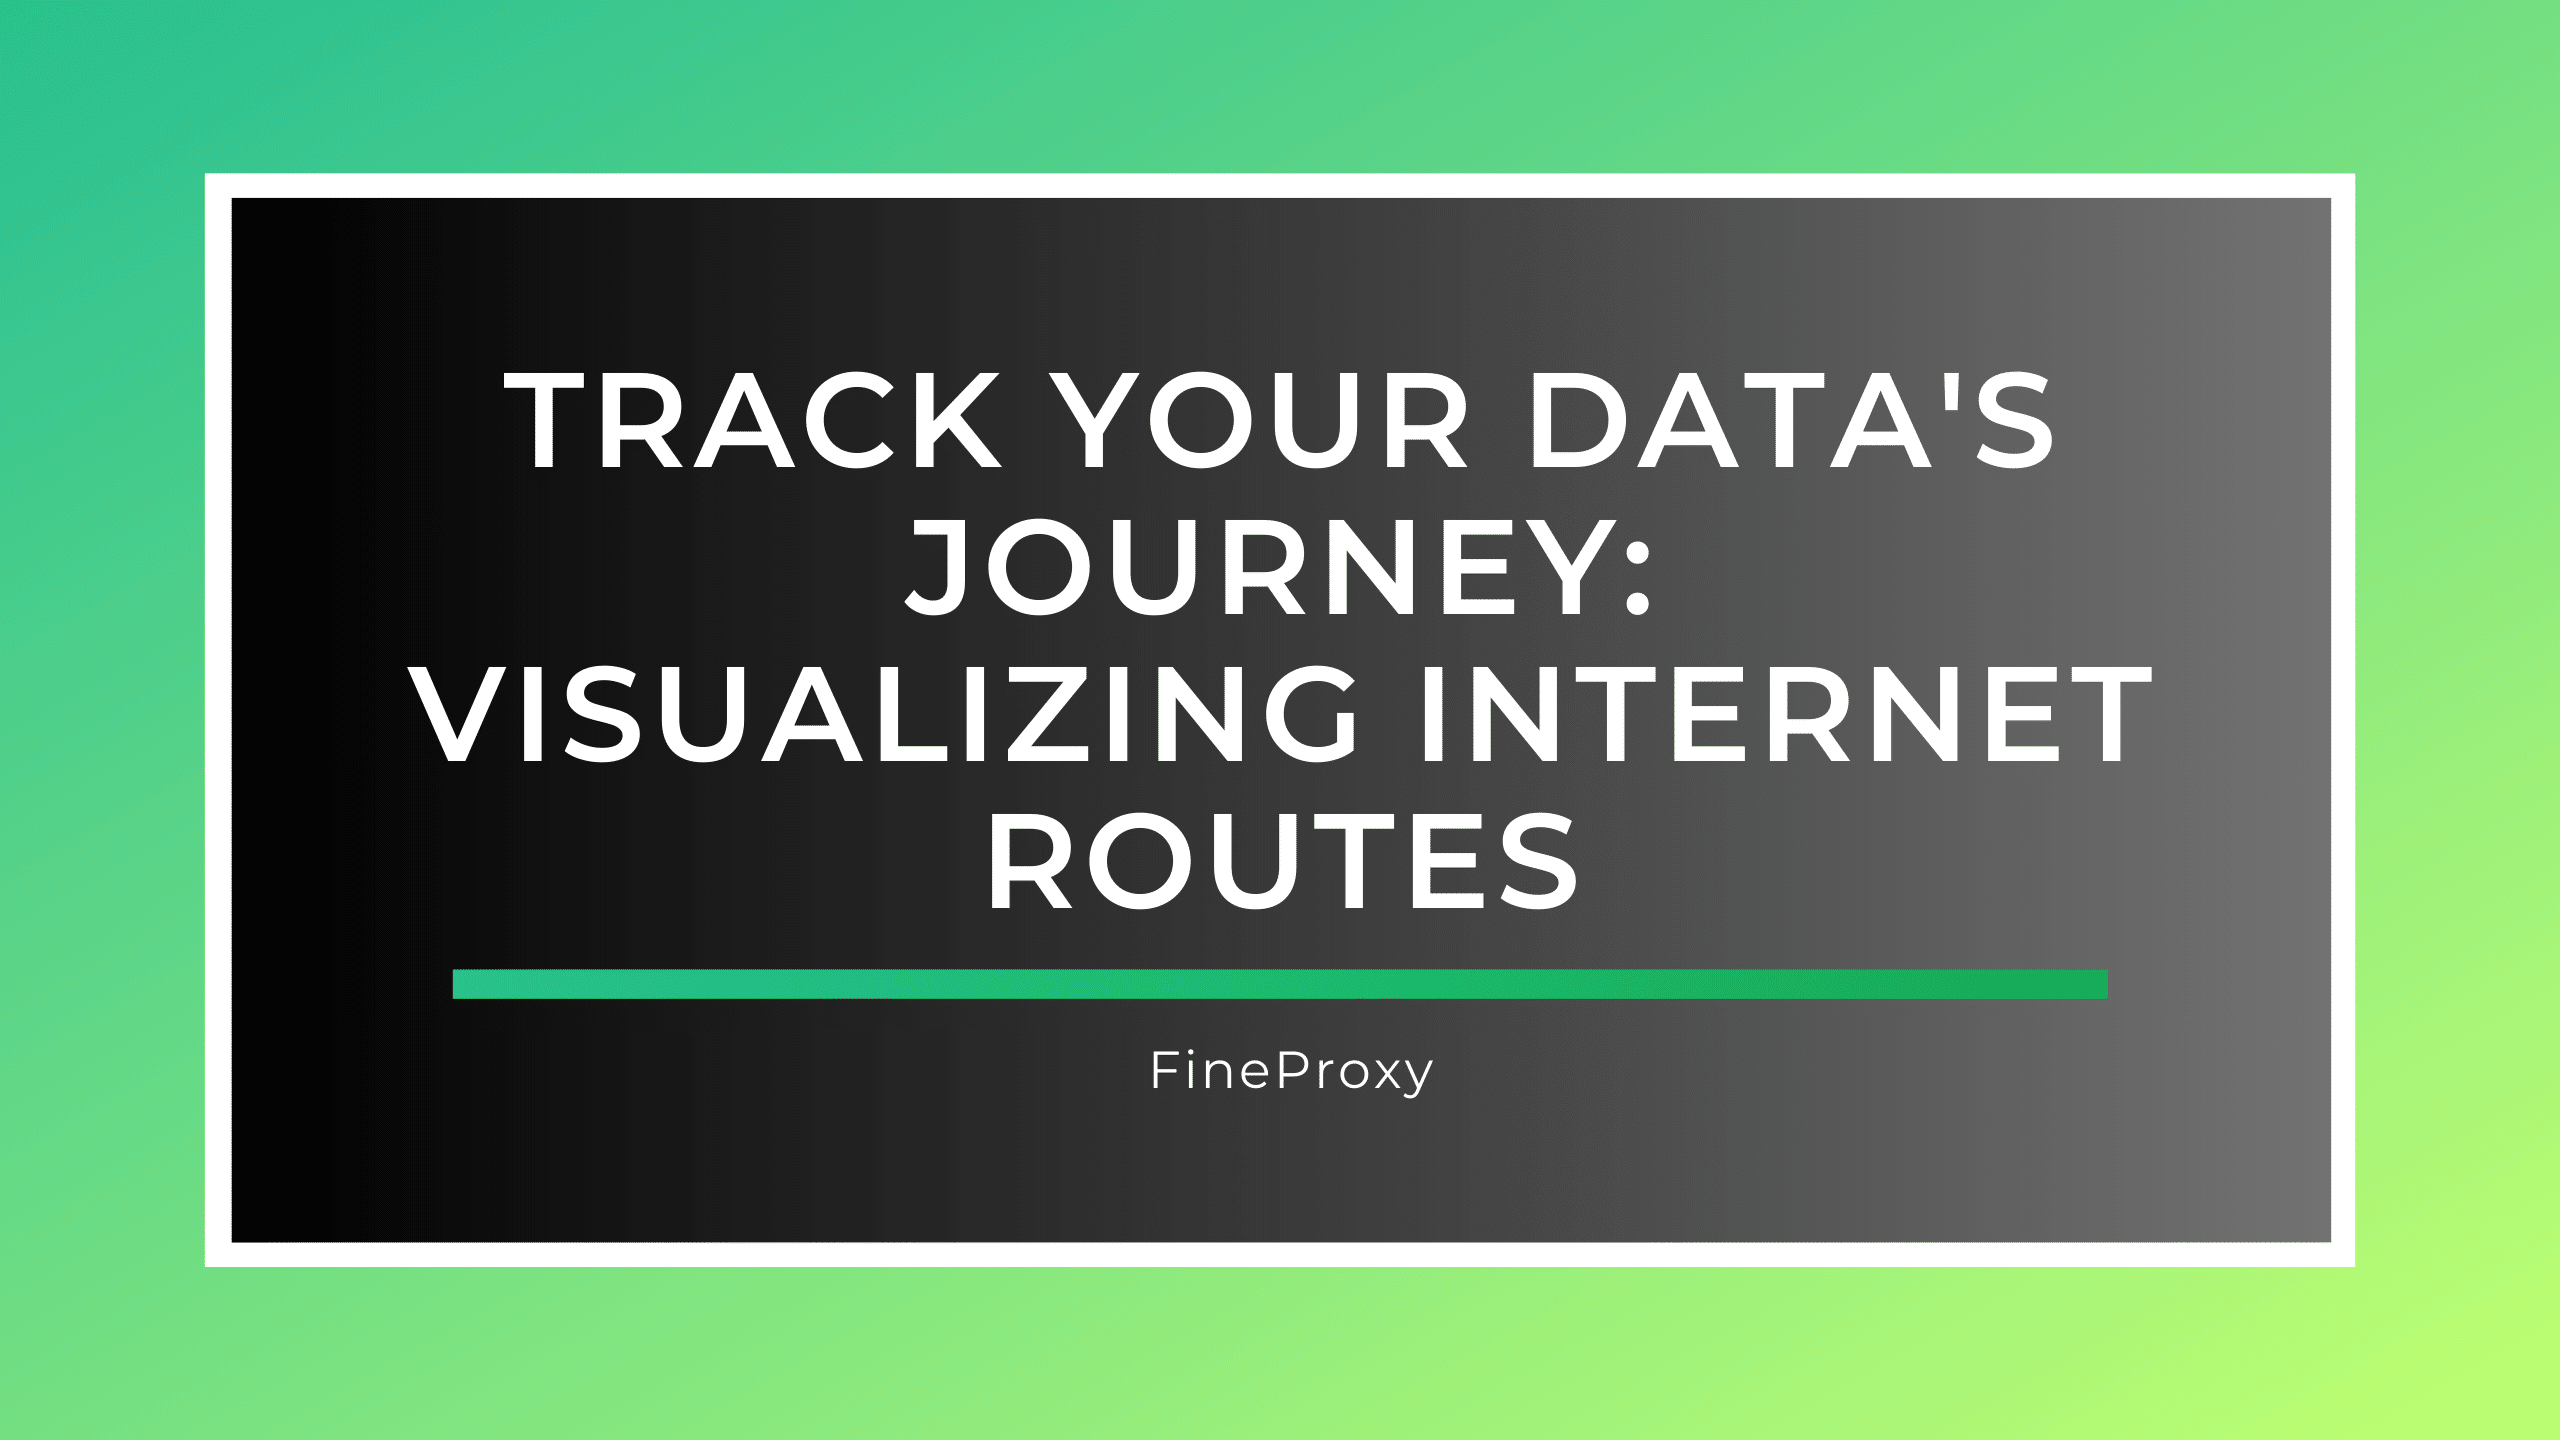 अपने डेटा की यात्रा को ट्रैक करें: इंटरनेट मार्गों की कल्पना करना